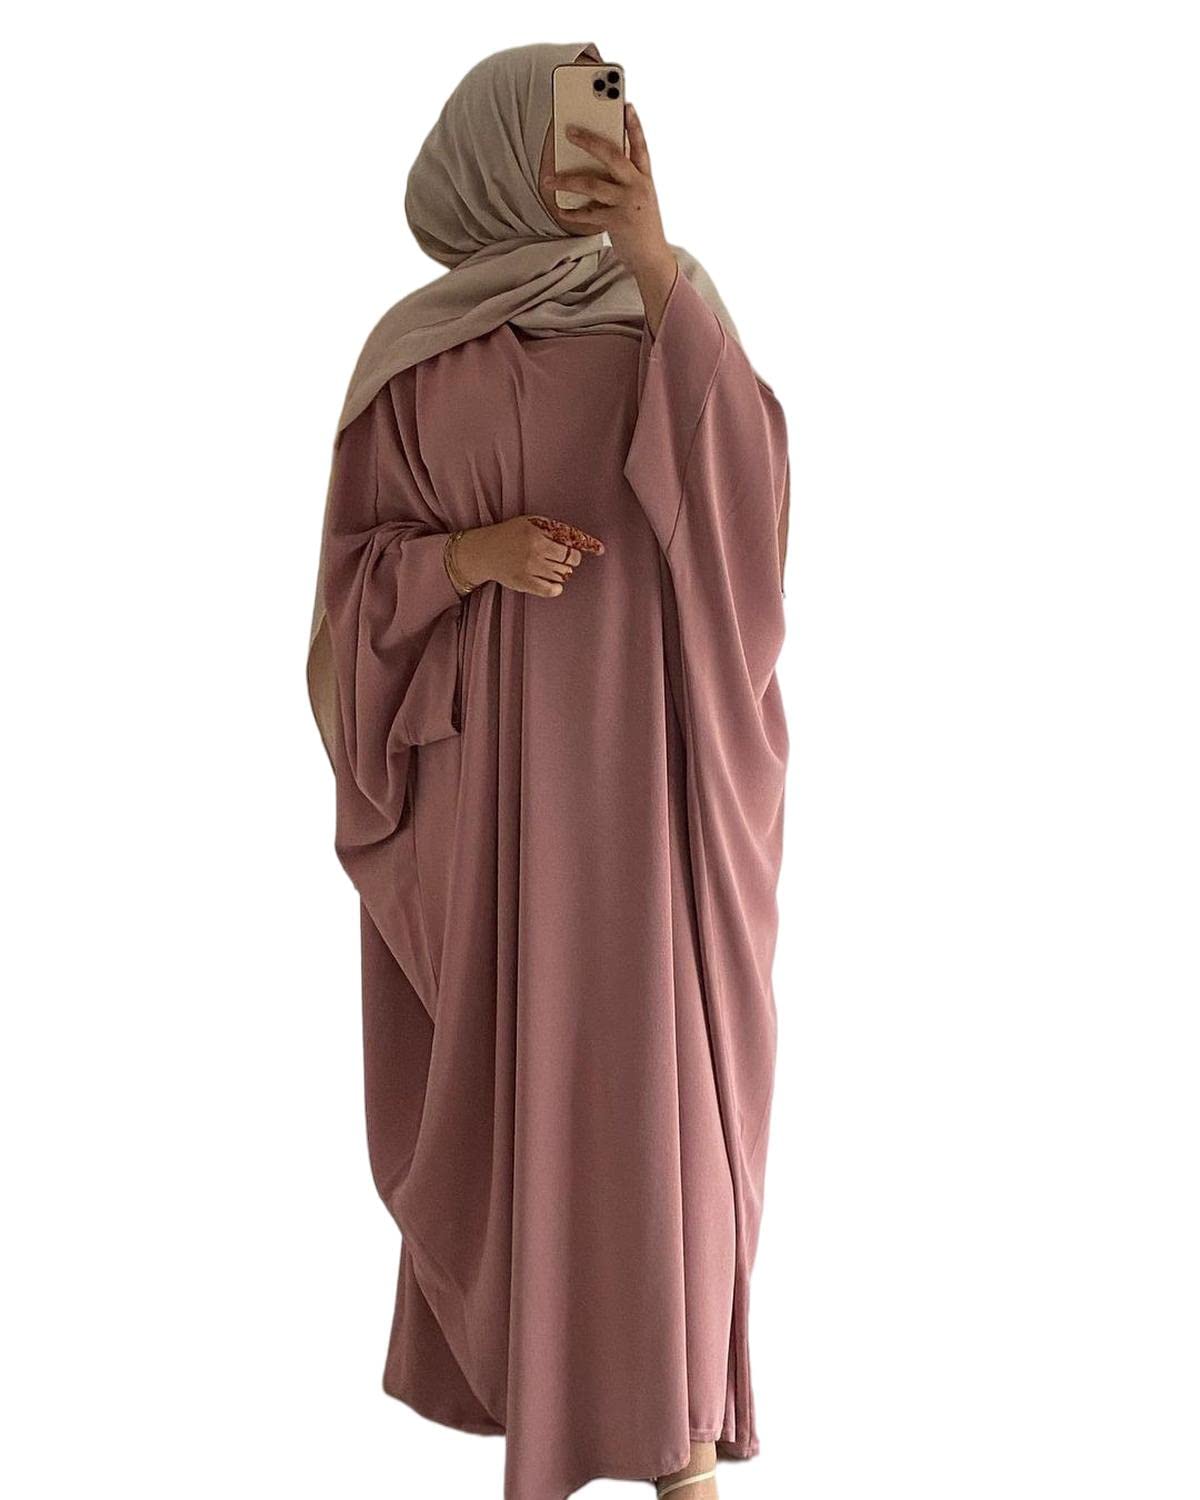 RUIG Damen Kleid Muslimische Gebet Abaya Islamische Robe Maxi Afrikanischer Kaftan Türkei Islam Dubai in voller Länge mit Hijab, Rosa Einheitsgröße